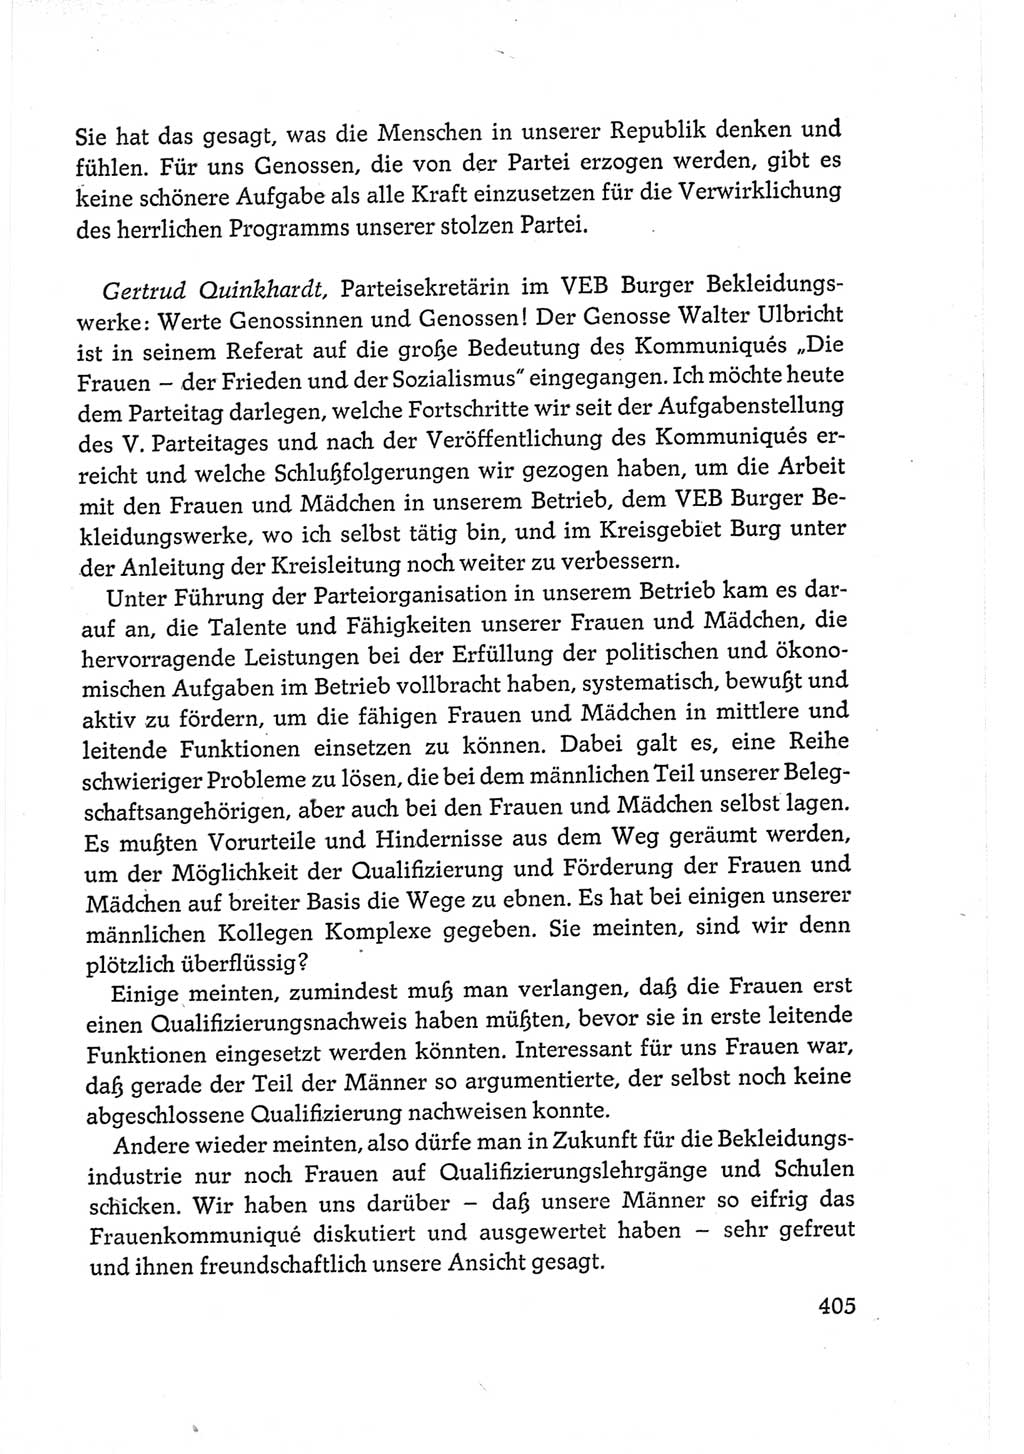 Protokoll der Verhandlungen des Ⅵ. Parteitages der Sozialistischen Einheitspartei Deutschlands (SED) [Deutsche Demokratische Republik (DDR)] 1963, Band Ⅲ, Seite 405 (Prot. Verh. Ⅵ. PT SED DDR 1963, Bd. Ⅲ, S. 405)